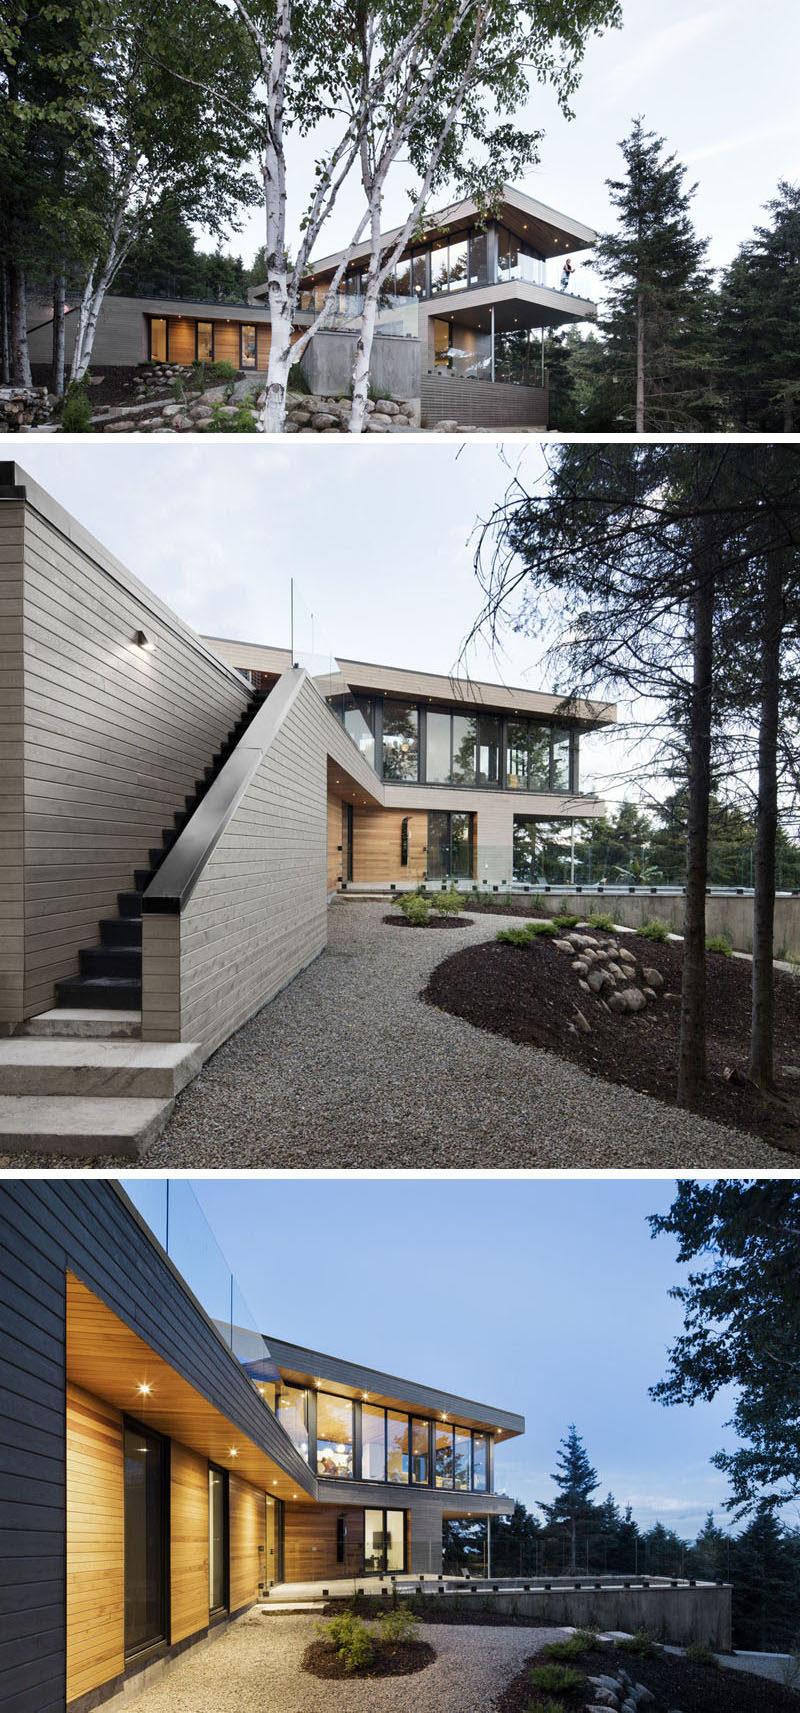 18 Современный дом в лесу // Дизайн этого дома позволяет хозяевам наслаждаться видами на окружающий лес и реку. #ModernHouse #ModernArchitecture #HouseInForest #HouseDesign